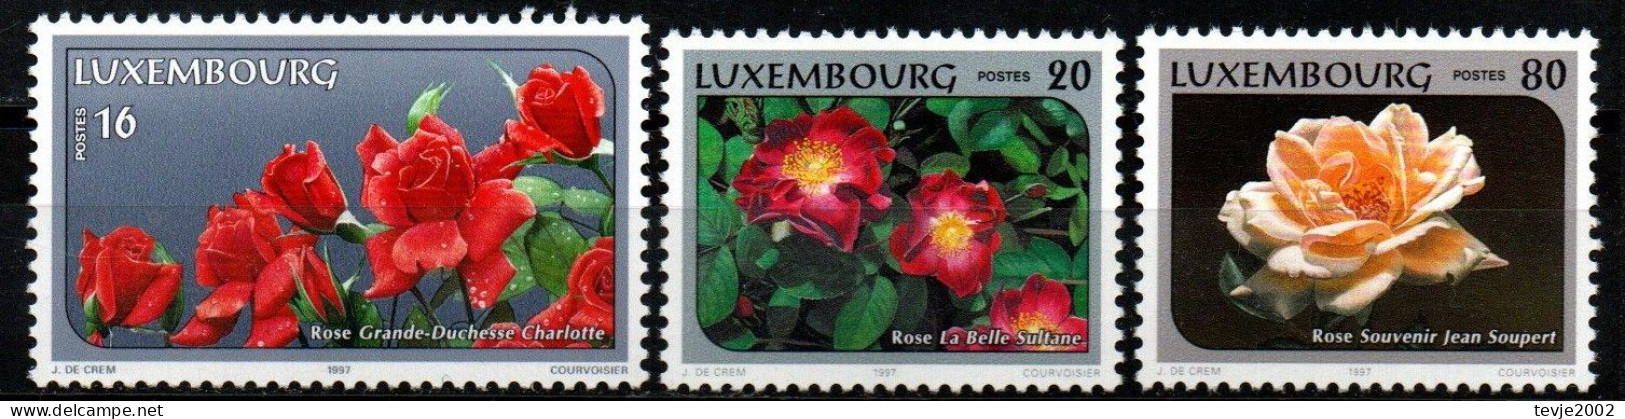 Luxemburg 1997 - Mi.Nr. 1411 - 1413 - Postfrisch MNH - Blumen Flowers Rosen Roses - Rozen